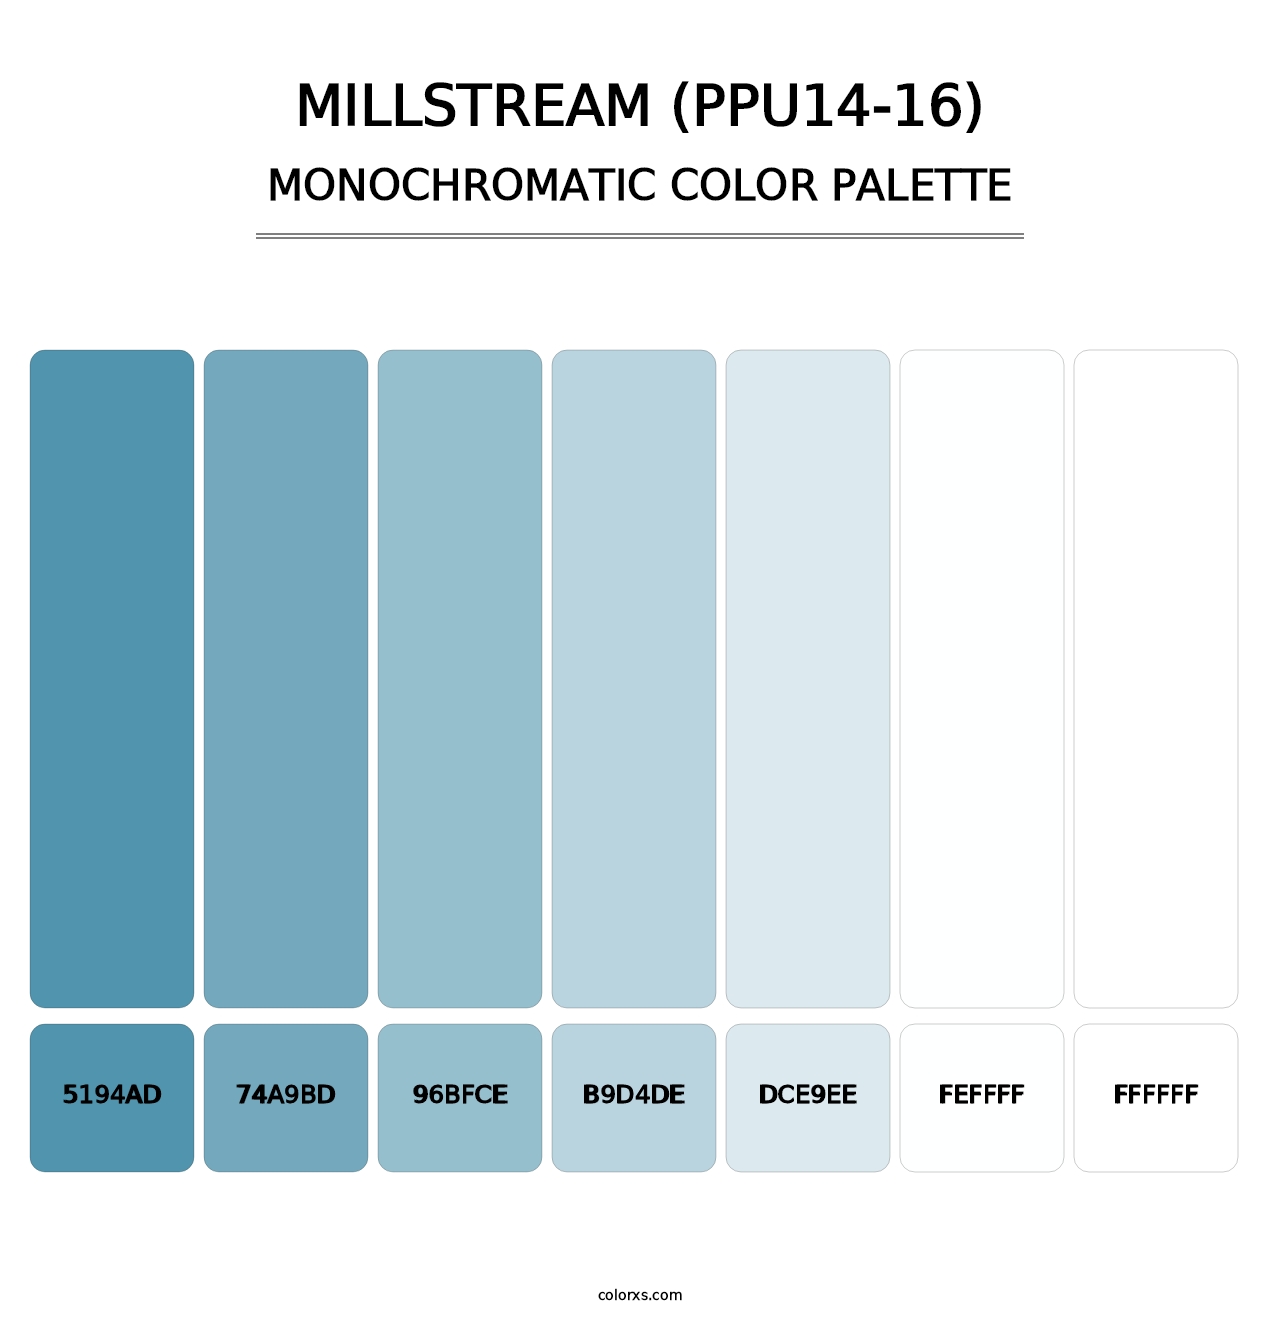 Millstream (PPU14-16) - Monochromatic Color Palette